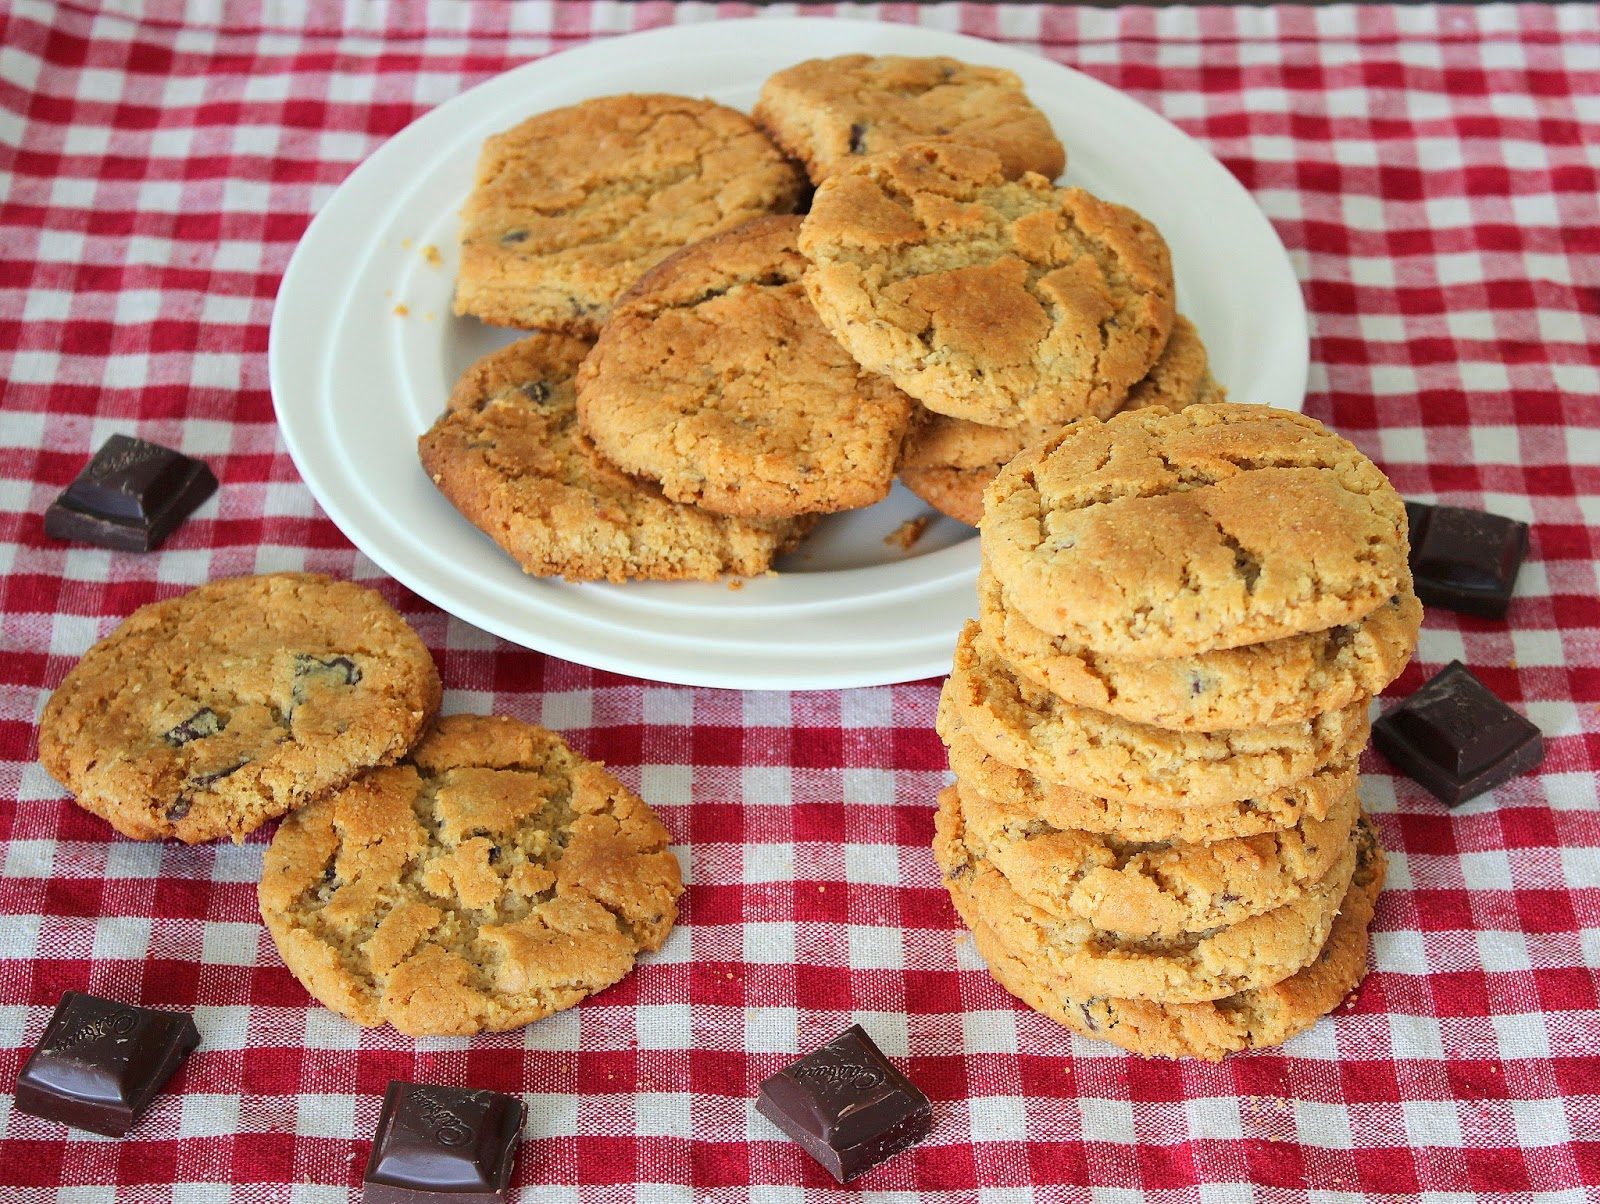 Συνταγή για υπέροχα μπισκότα με φιστικοβούτυρο και σοκολάτα. Φτιάξτε τα γρήγορα και εύκολα σε λίγα μόνο λεπτά.